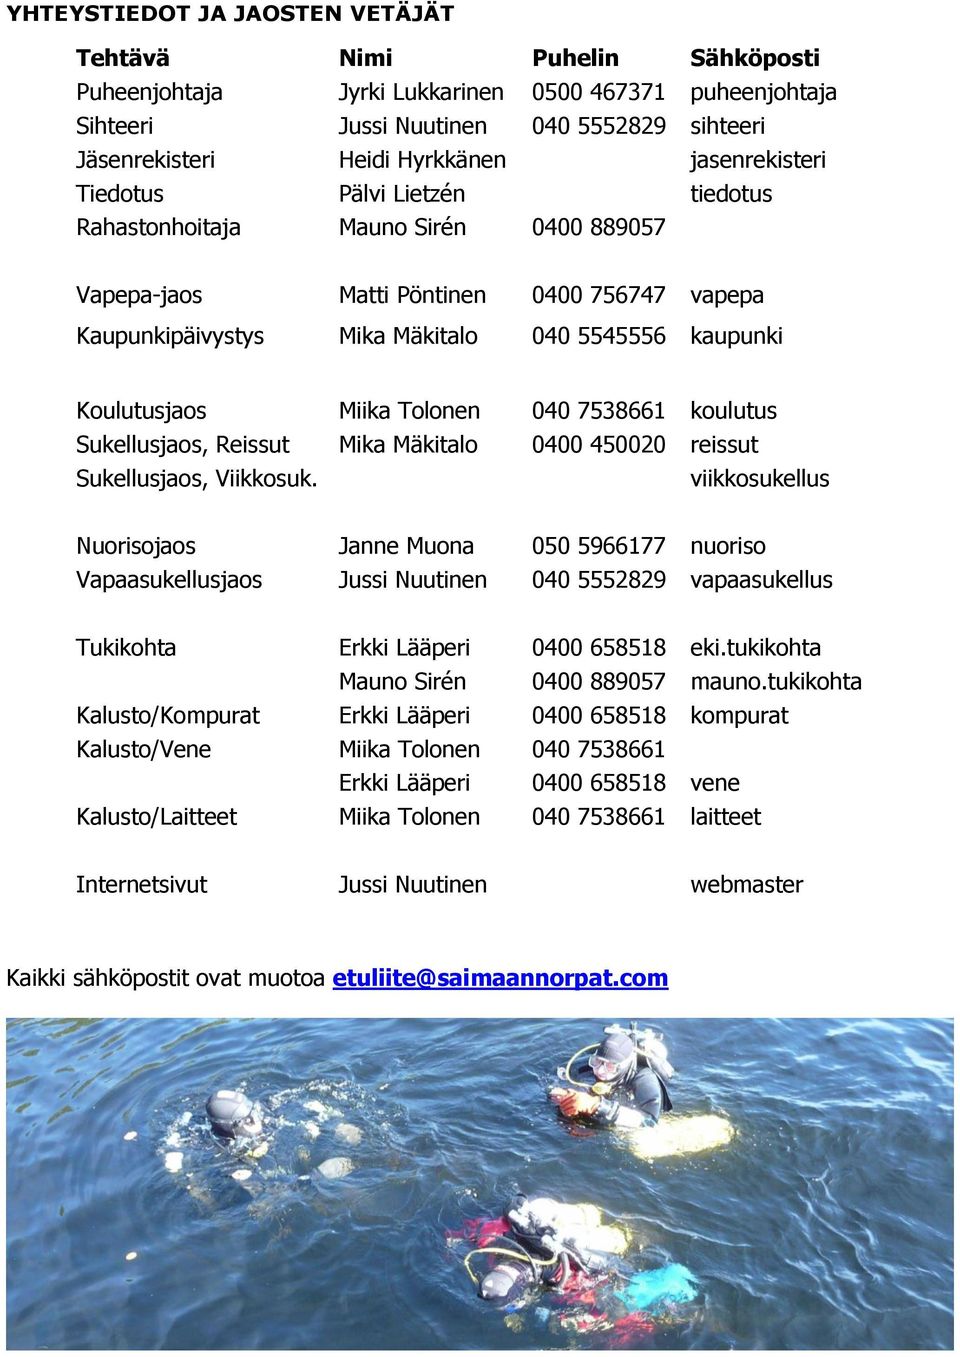 Miika Tolonen 040 7538661 koulutus Sukellusjaos, Reissut Mika Mäkitalo 0400 450020 reissut Sukellusjaos, Viikkosuk.